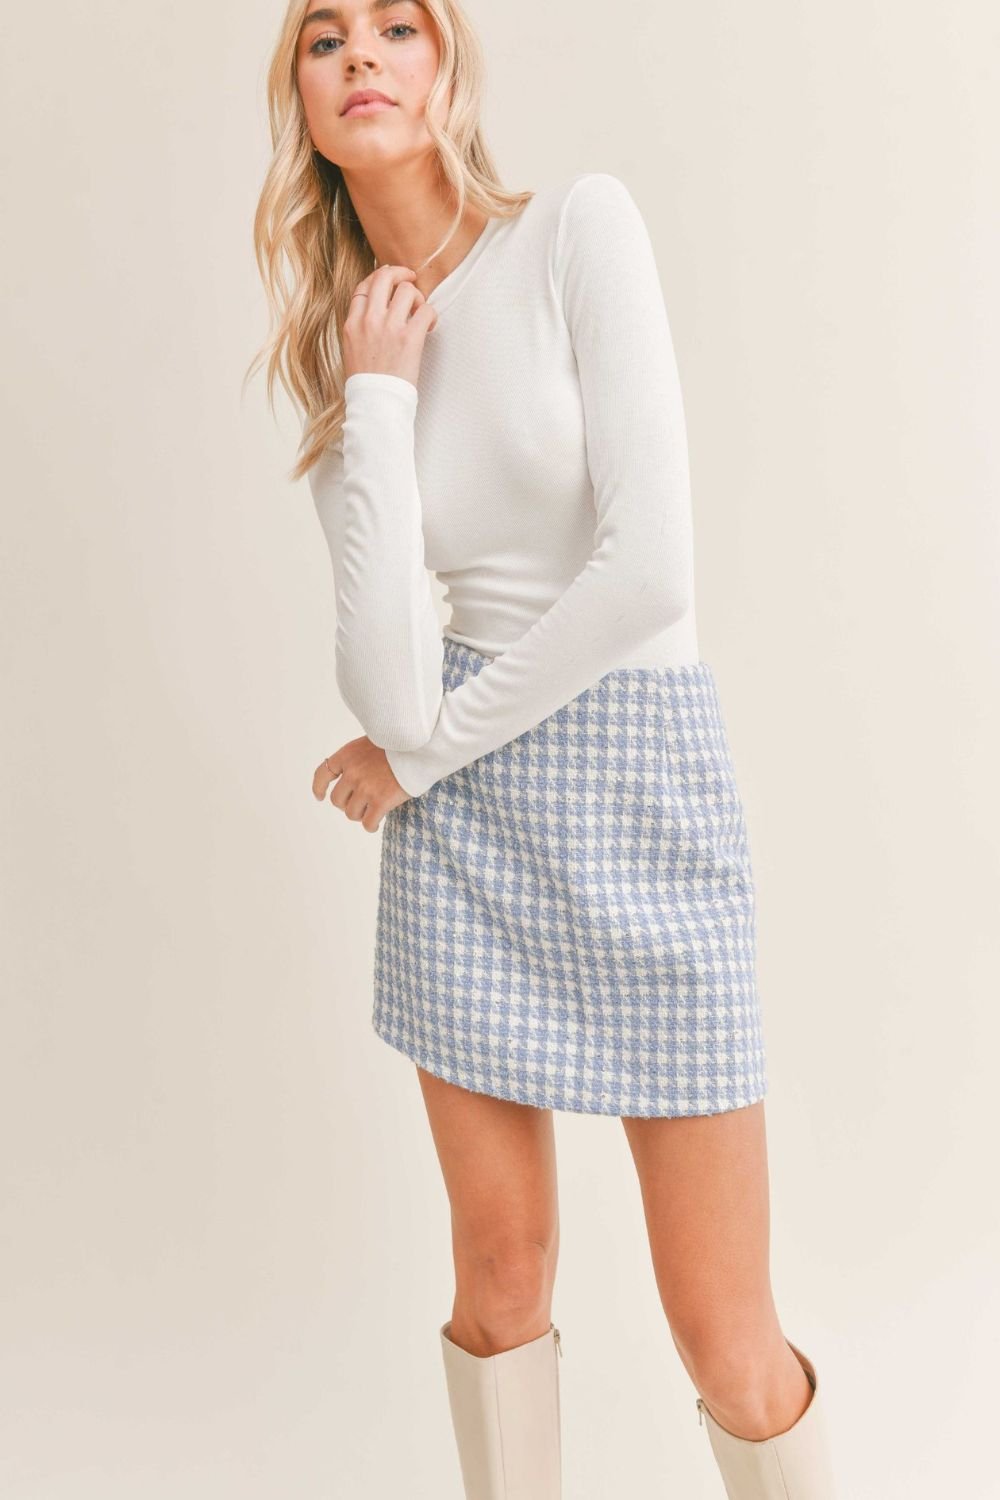 Women's Crewneck Long Sleeve Basic Top | Sadie & Sage | White - Women's Shirts & Tops - Blooming Daily